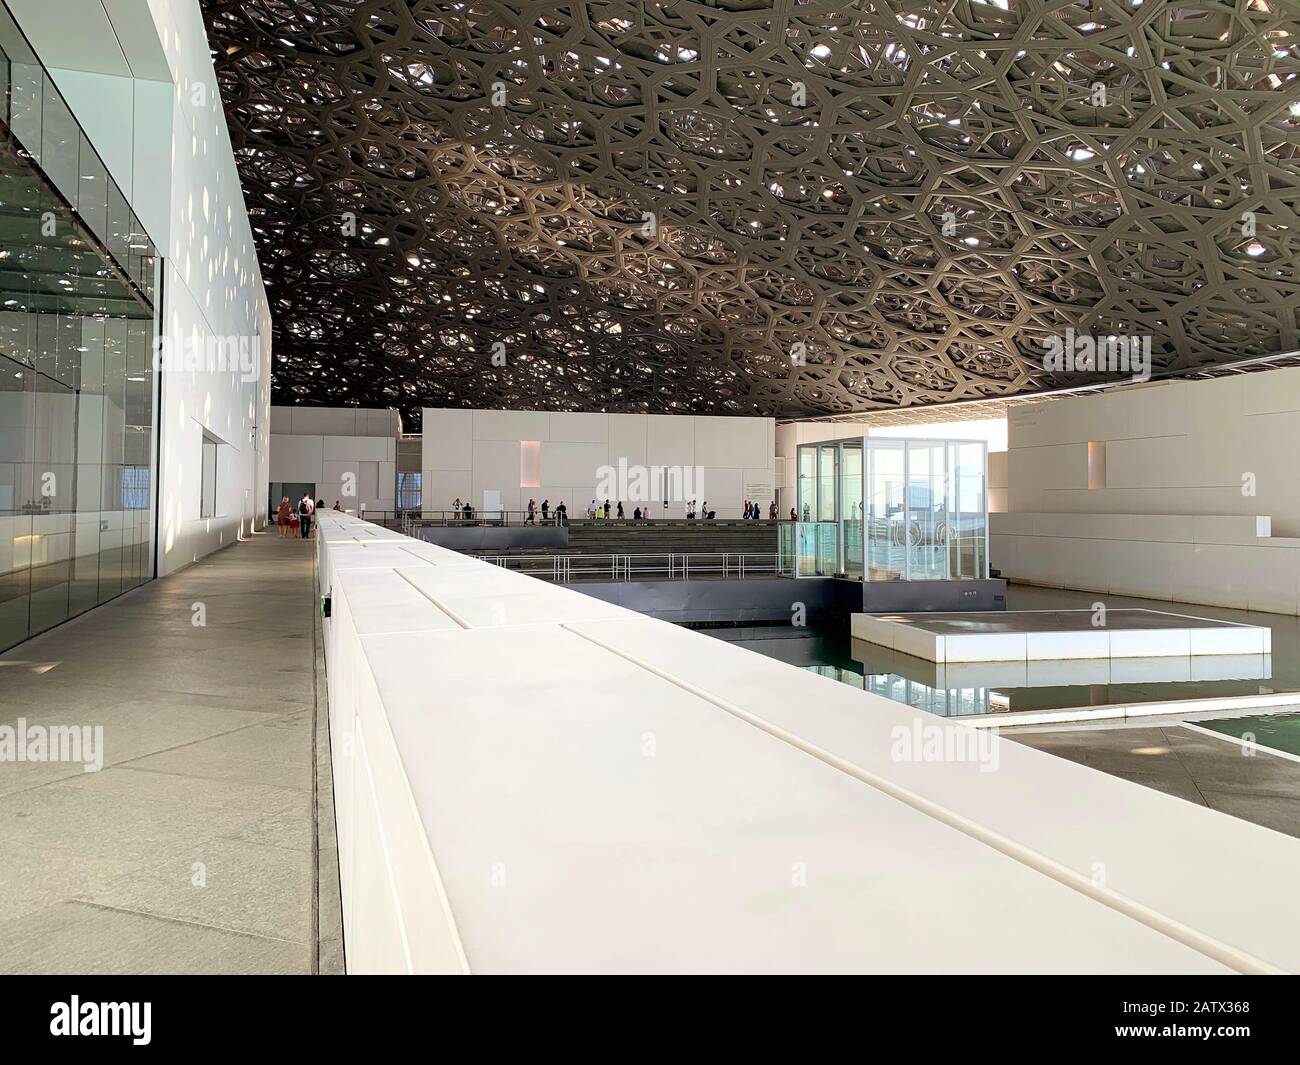 Abu Dhabi / Emirats Arabes Unis - 3 janvier 2019 : Musée du Louvre à Abu Dhabi. Vue sur l'intérieur du beau musée du Louvre avec « pluie de lumière ». Banque D'Images